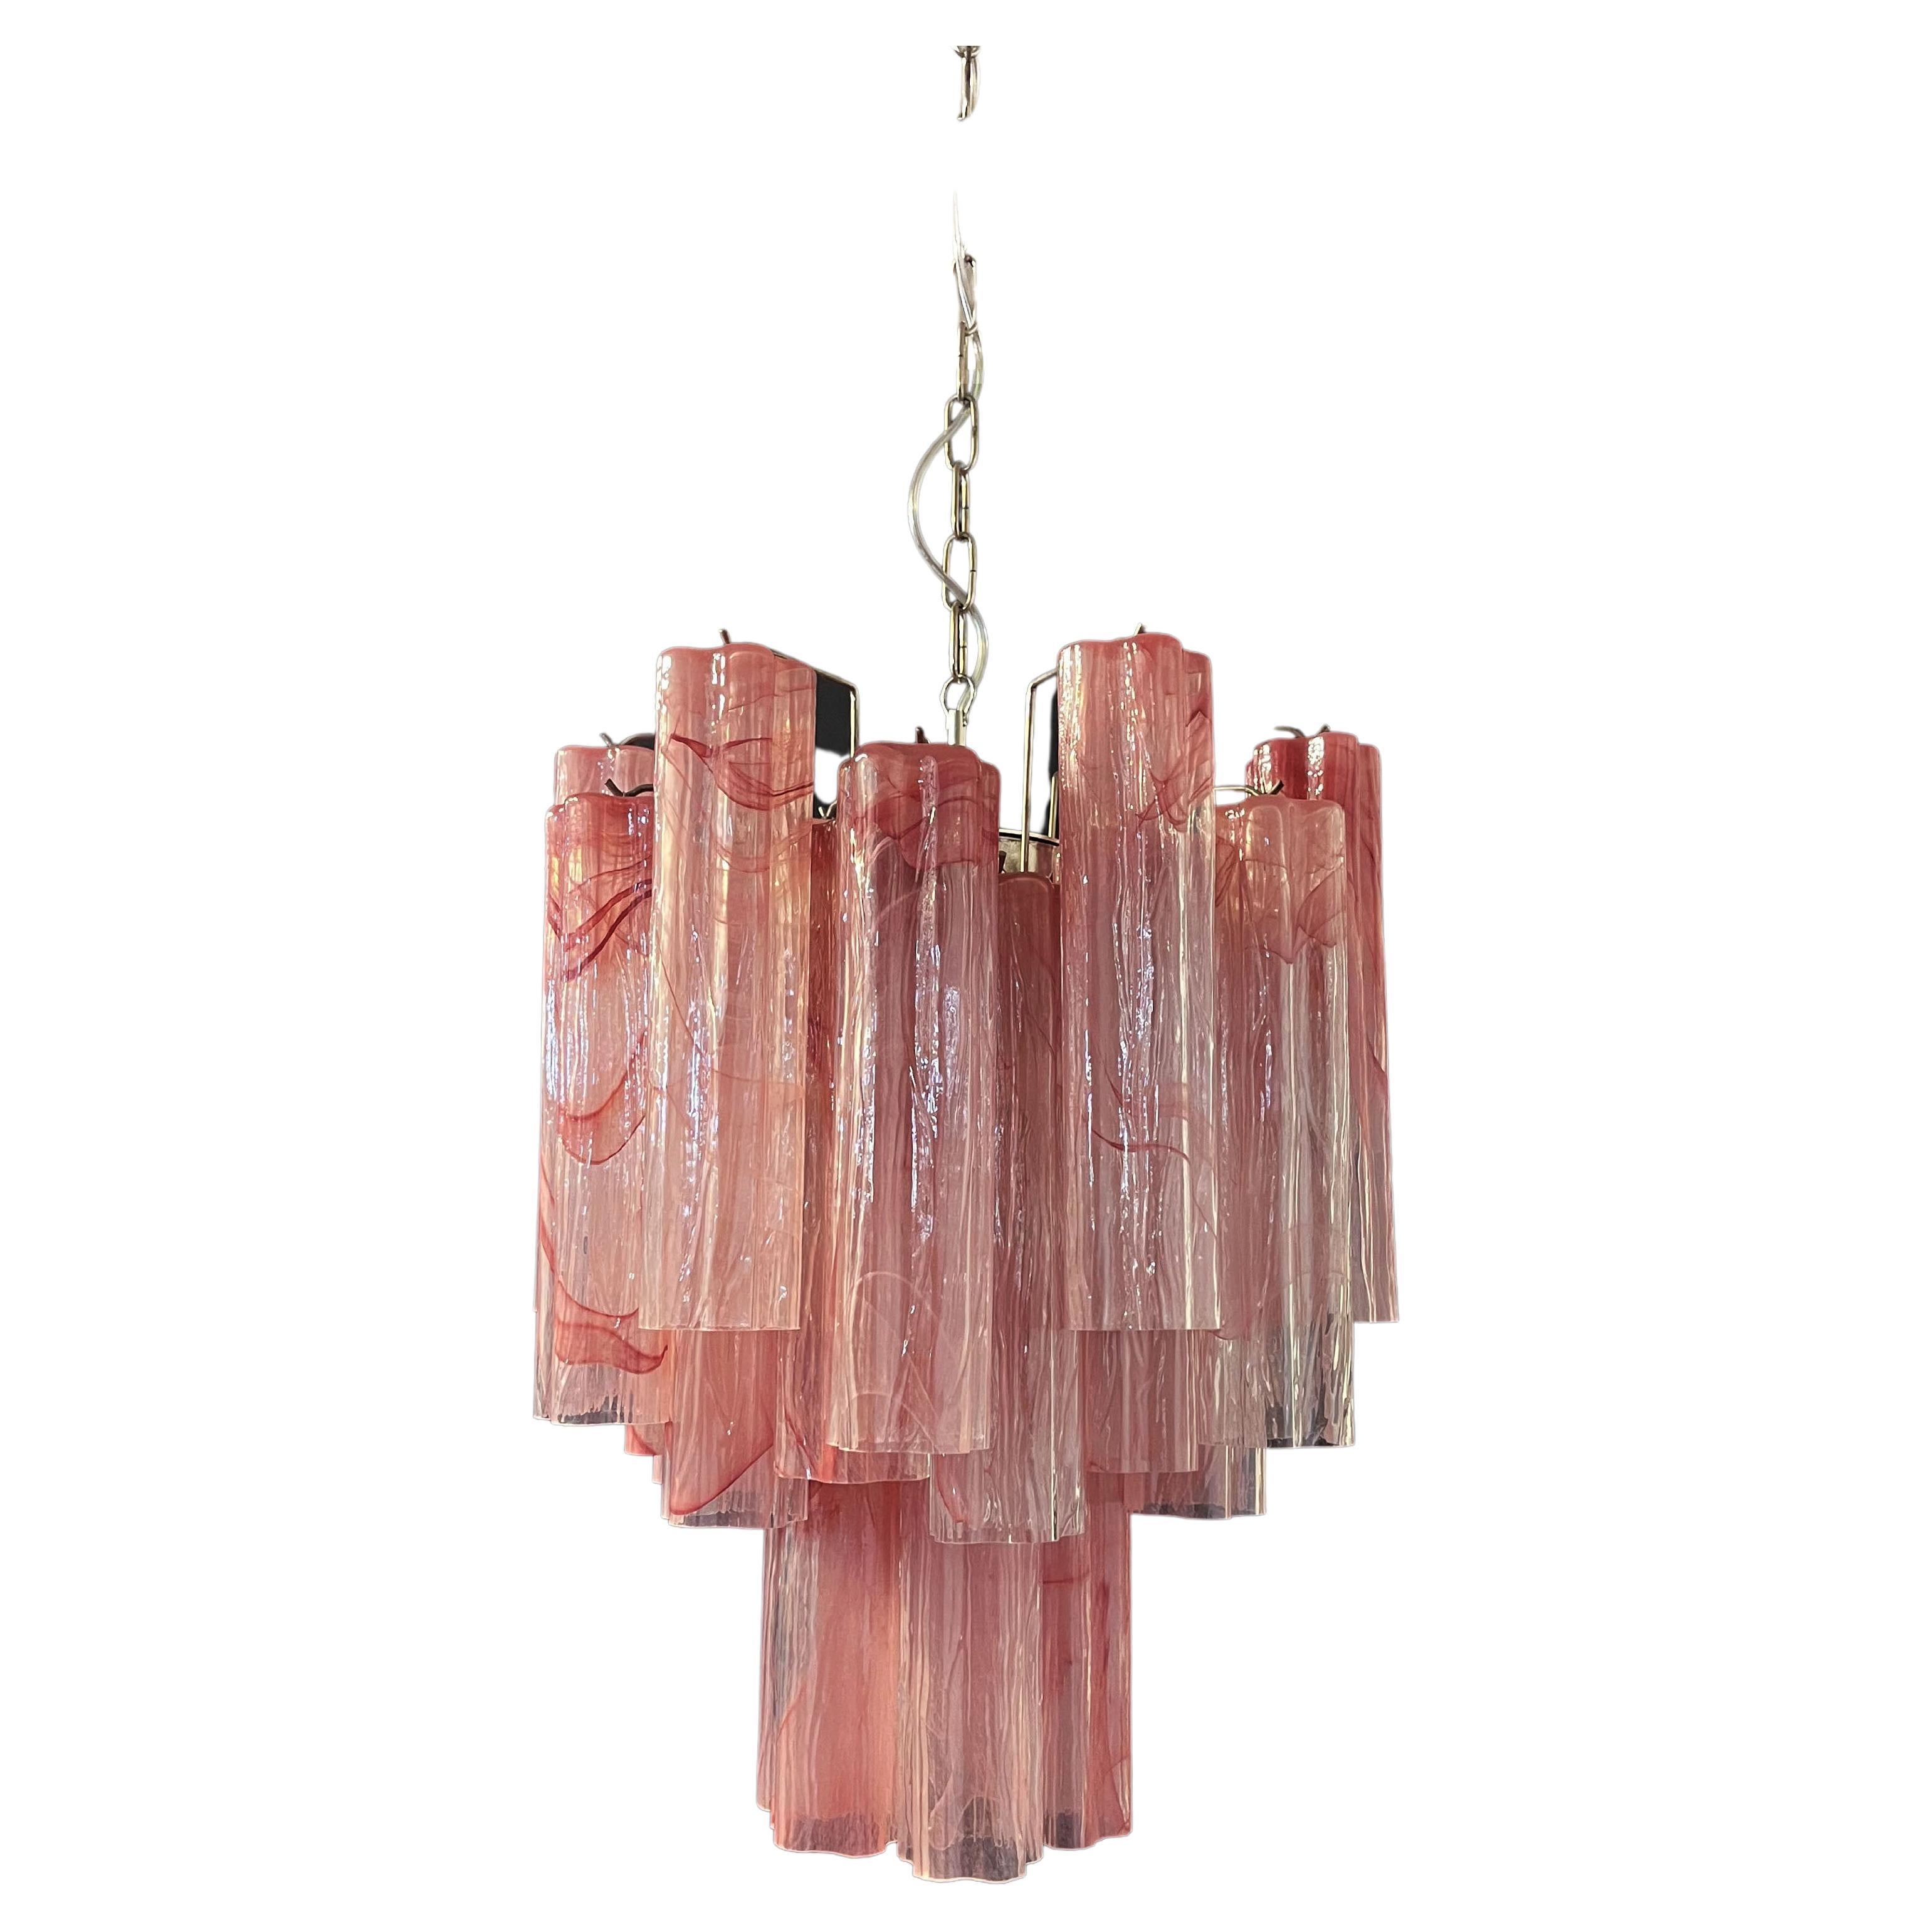 Fantastischer Glasröhren-Kronleuchter – 30 rosa Alabastergläser